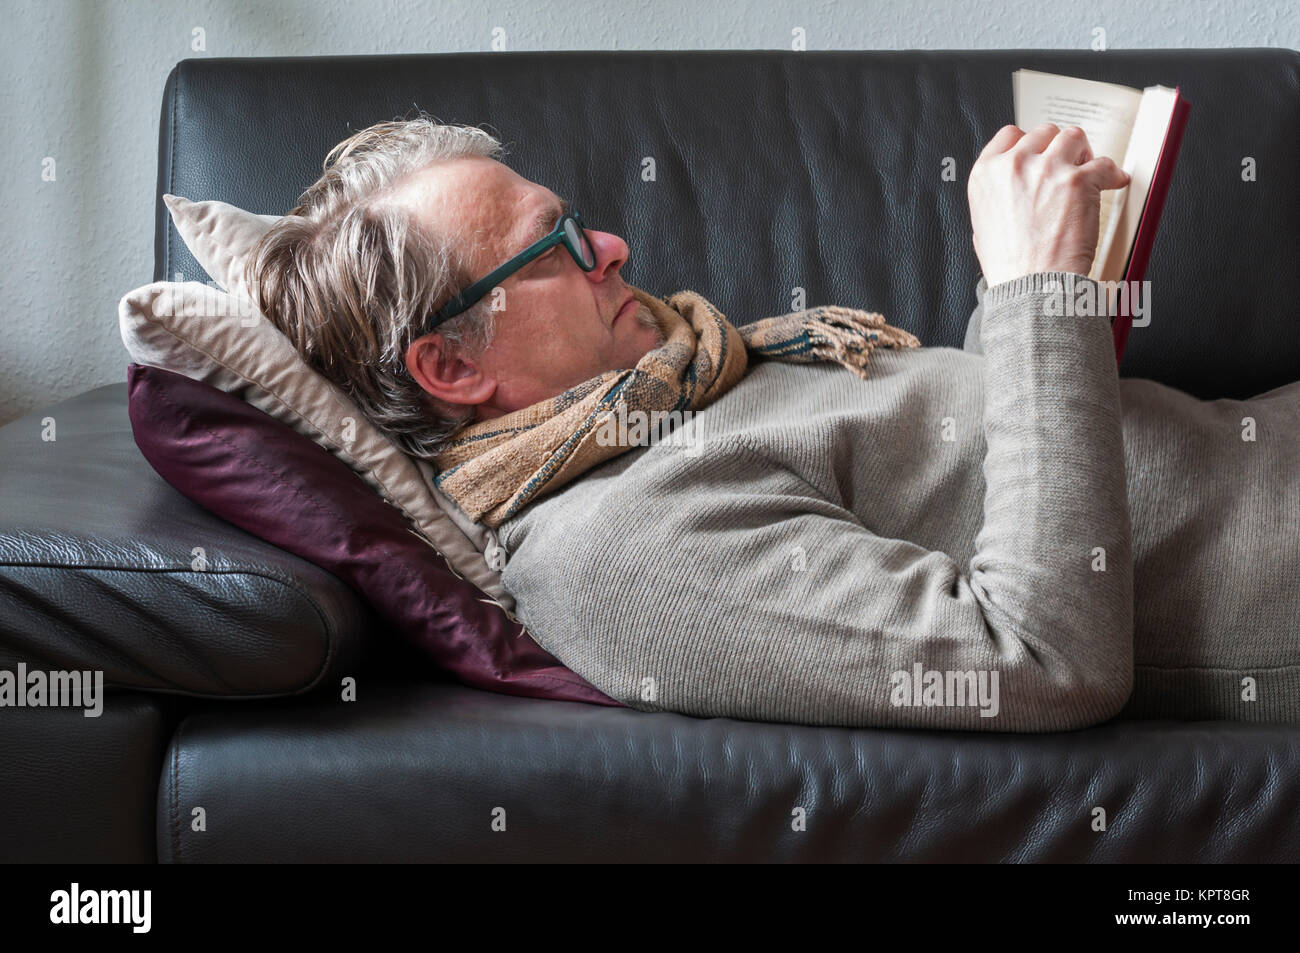 Liegender Mann auf einem Sofa mit Brille und Schal liest in einem Buch. Stock Photo